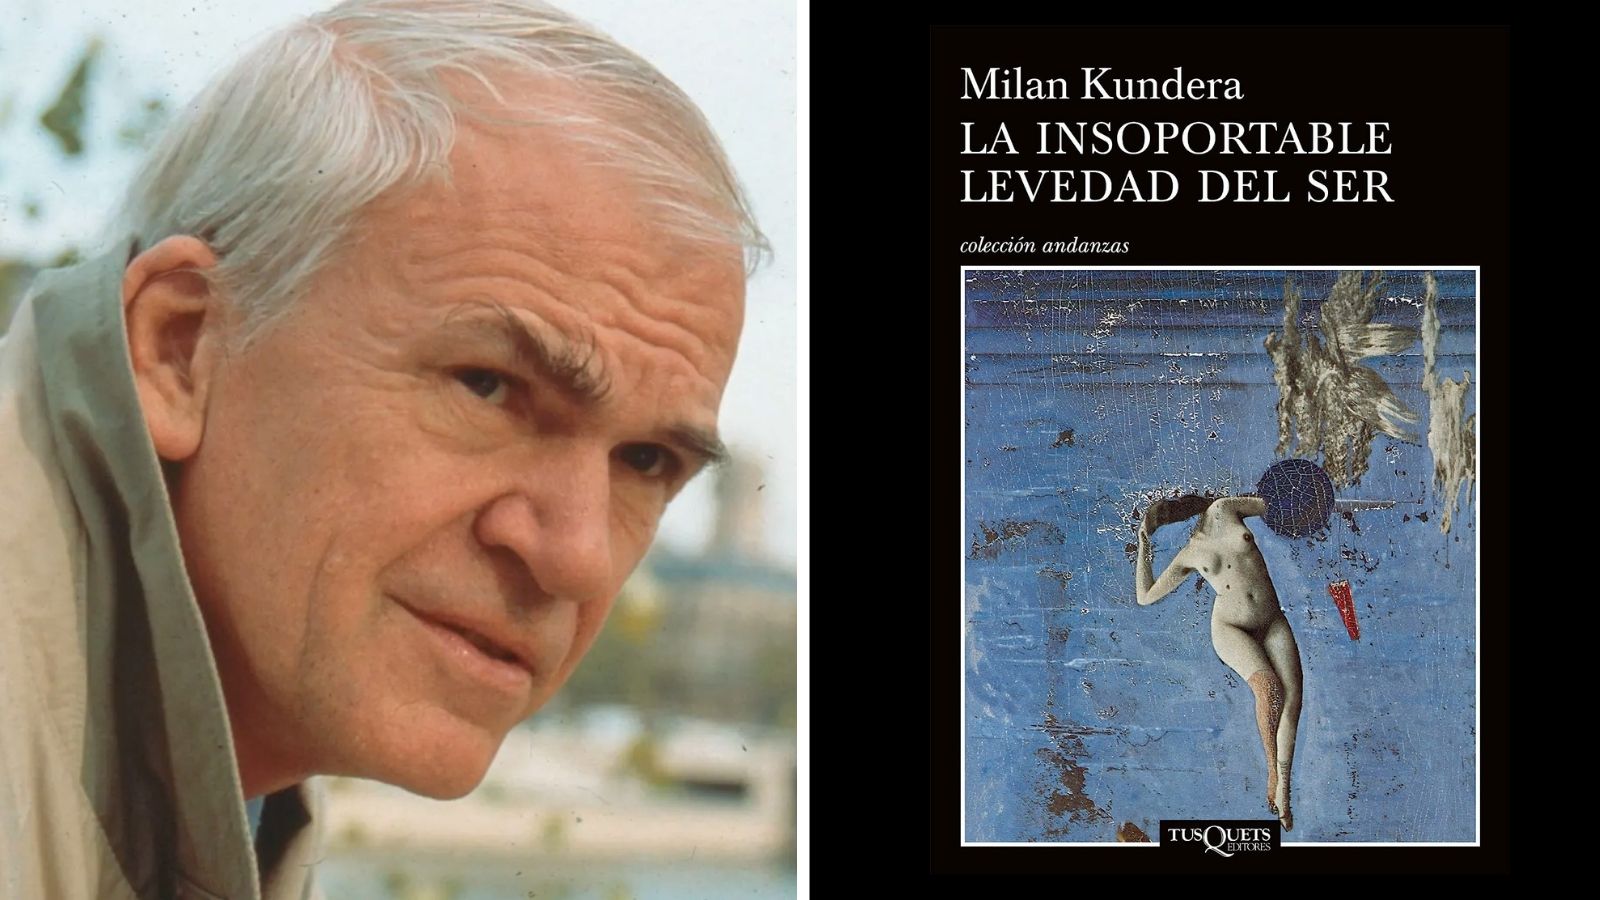 Milan Kundera, autor de ‘La insoportable levedad del ser’, murió a los 94 años